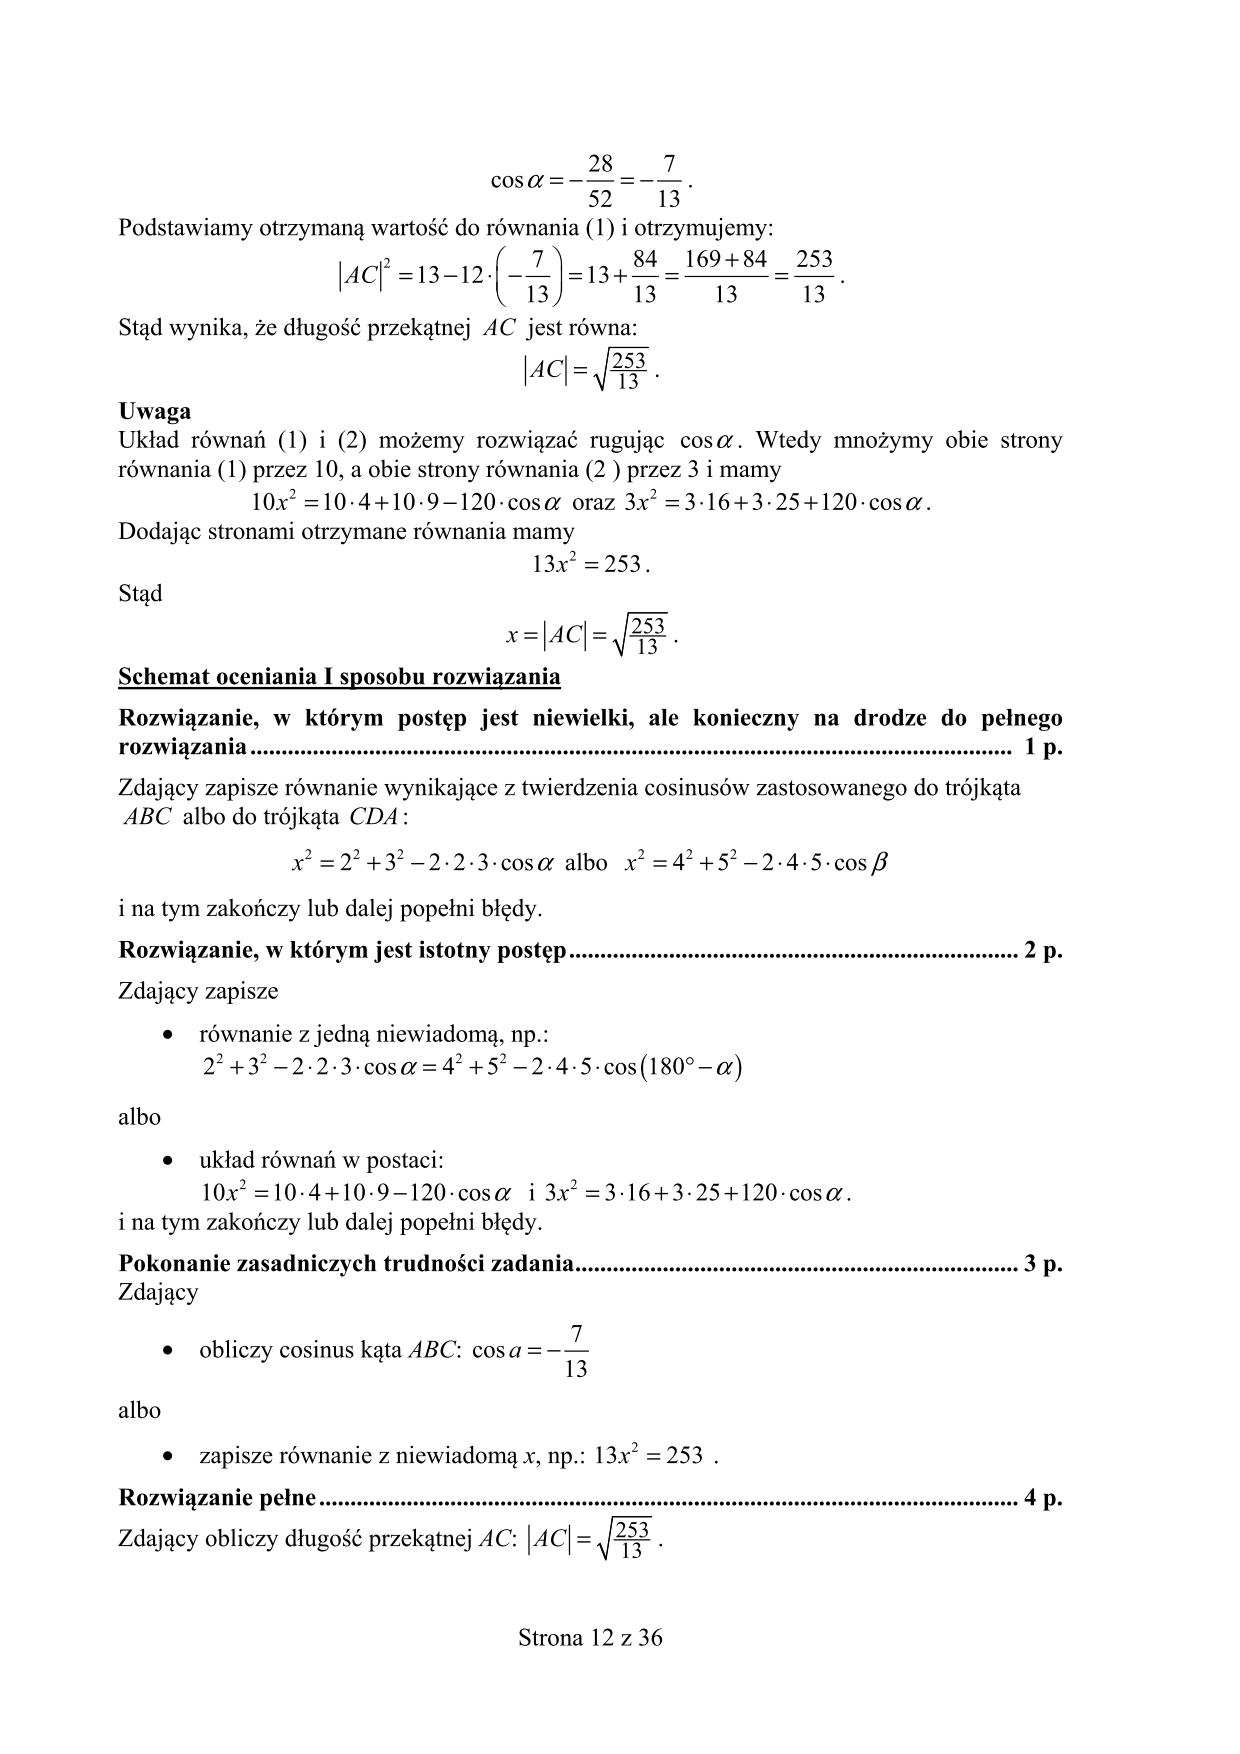 odpowiedzi-matematyka-poziom-rozszerzony-matura-2015-12